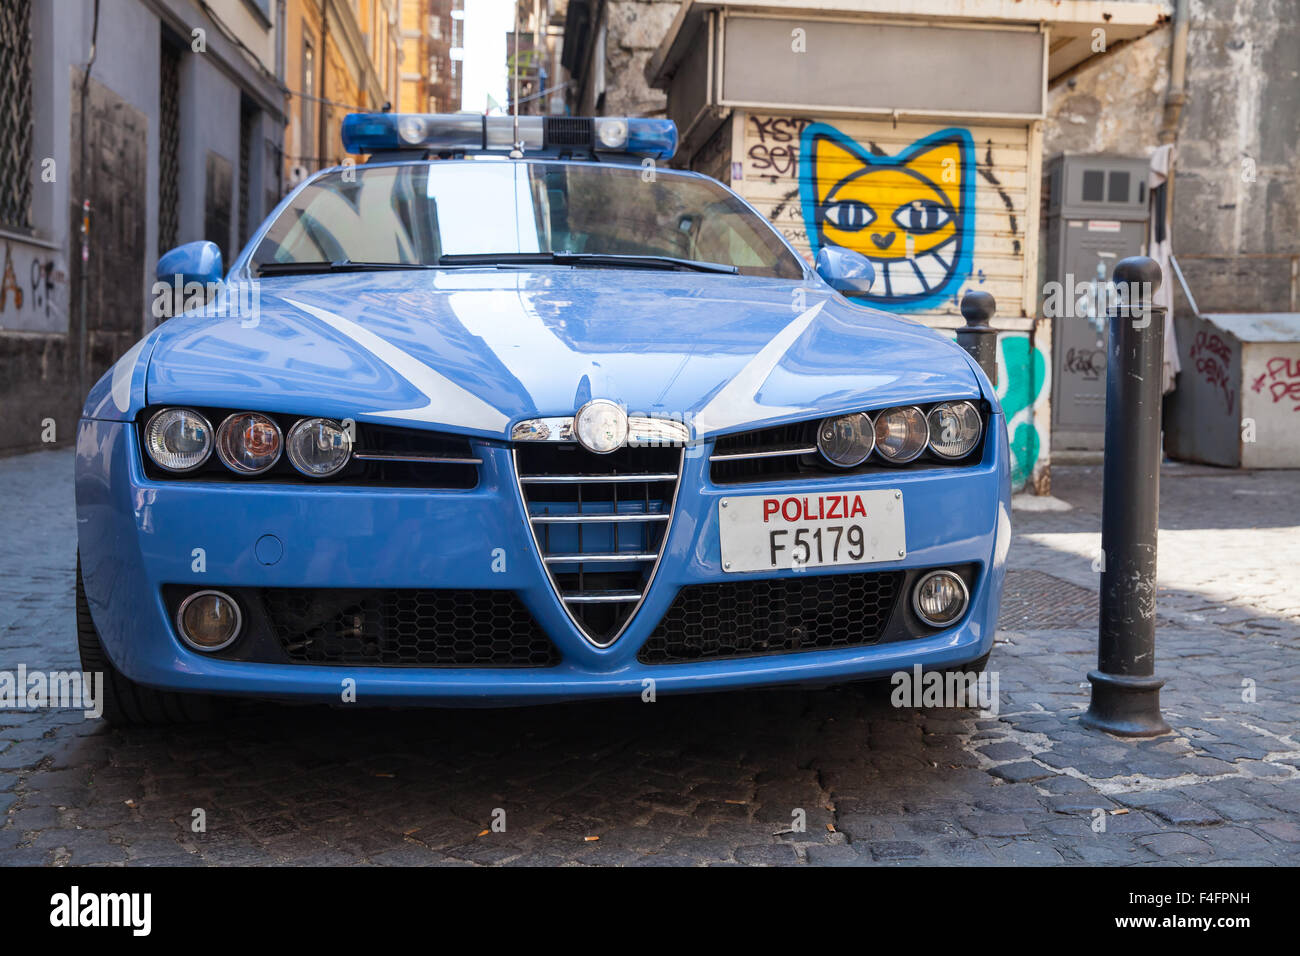 Nápoles, Italia - Agosto 09, 2015: Azul Alfa Romeo 159 'Pantera', coche de policía en Nápoles Foto de stock